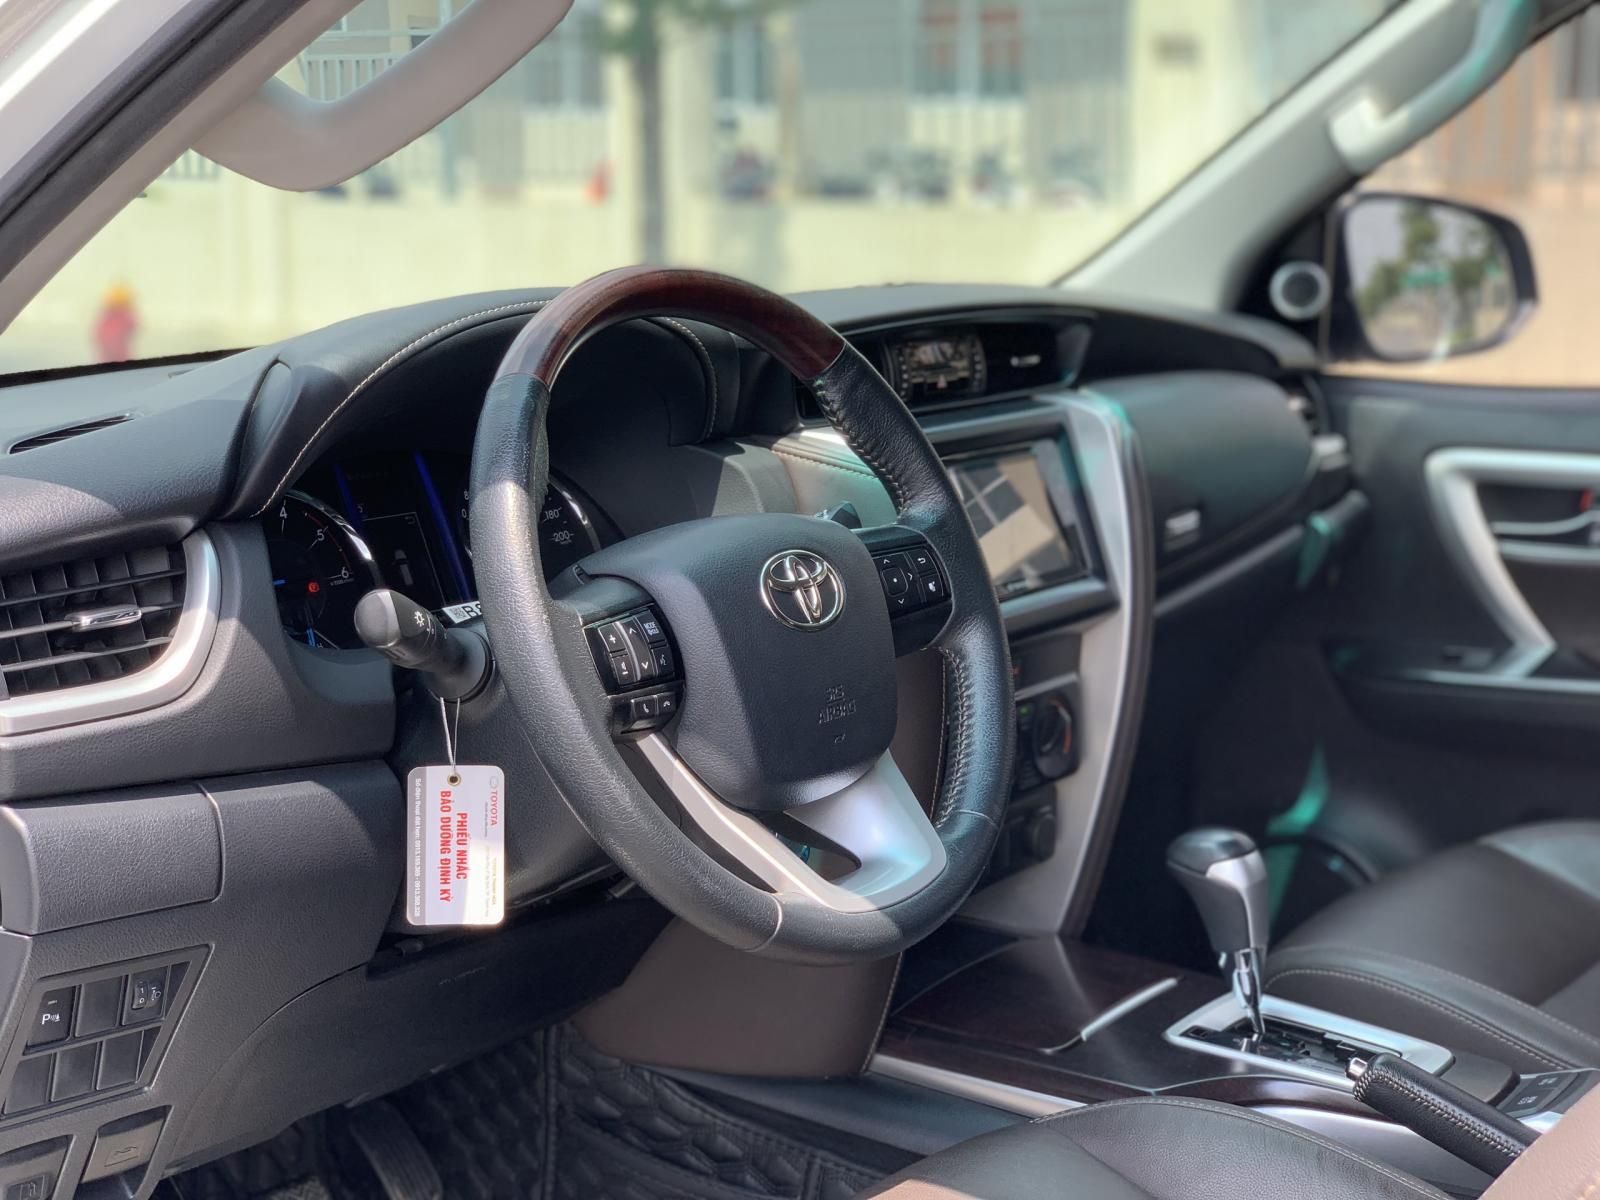 Toyota Fortuner 2019 - Thanh lý thu hồi vốn